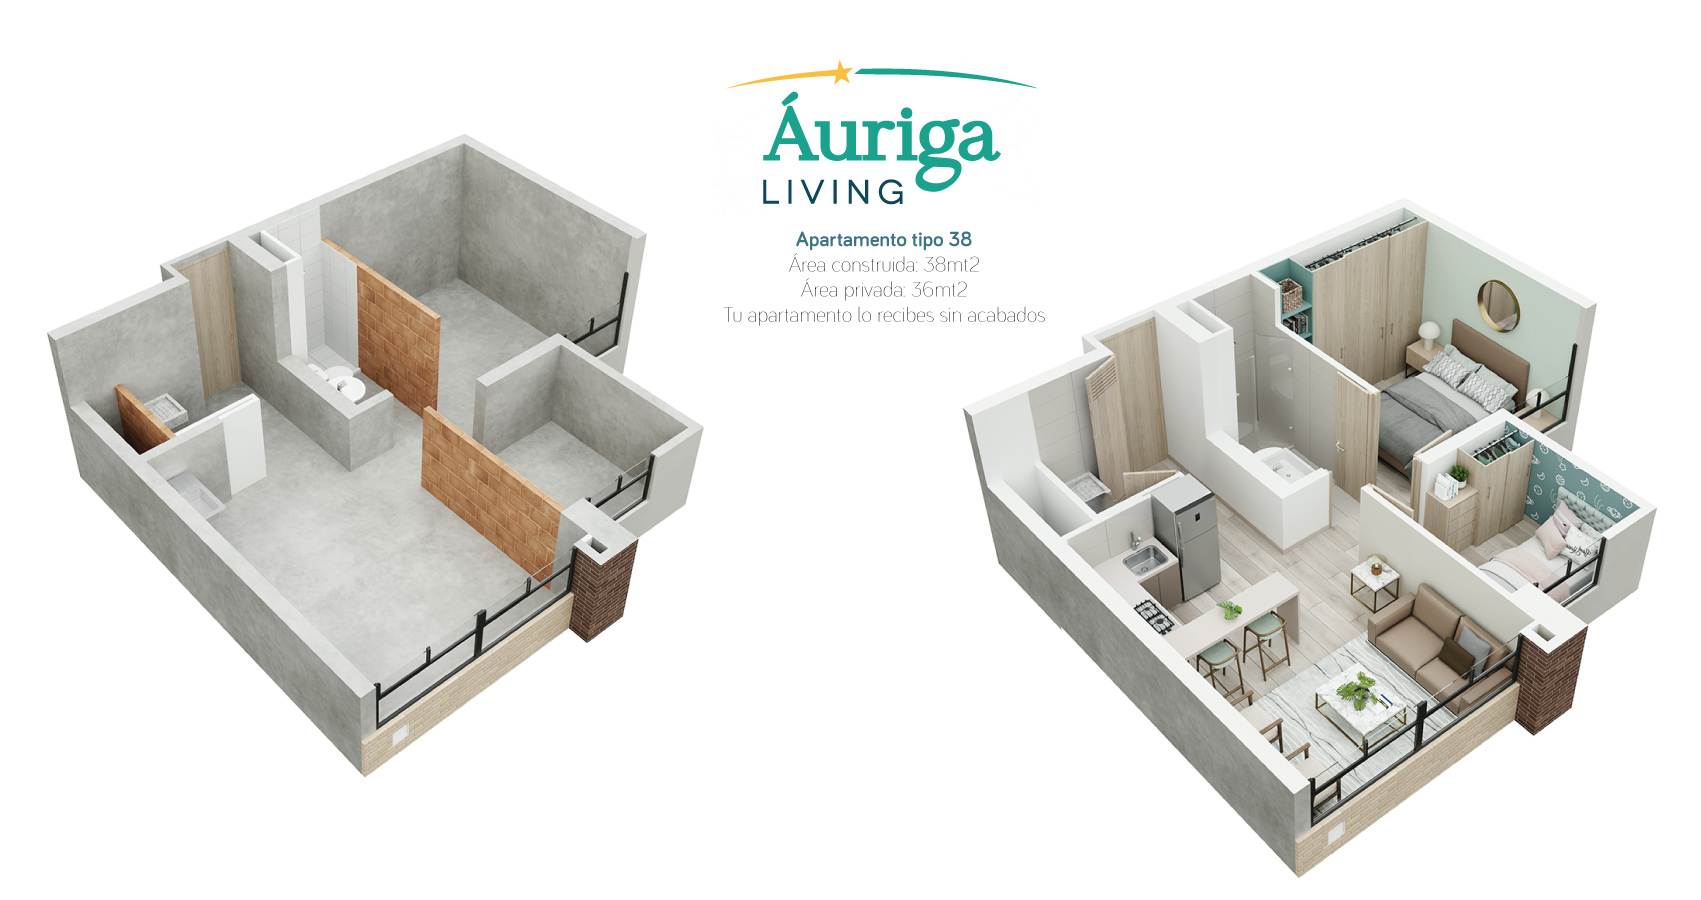 Auriga Living apartamentos con subsidio de vivienda al norte de bogota 